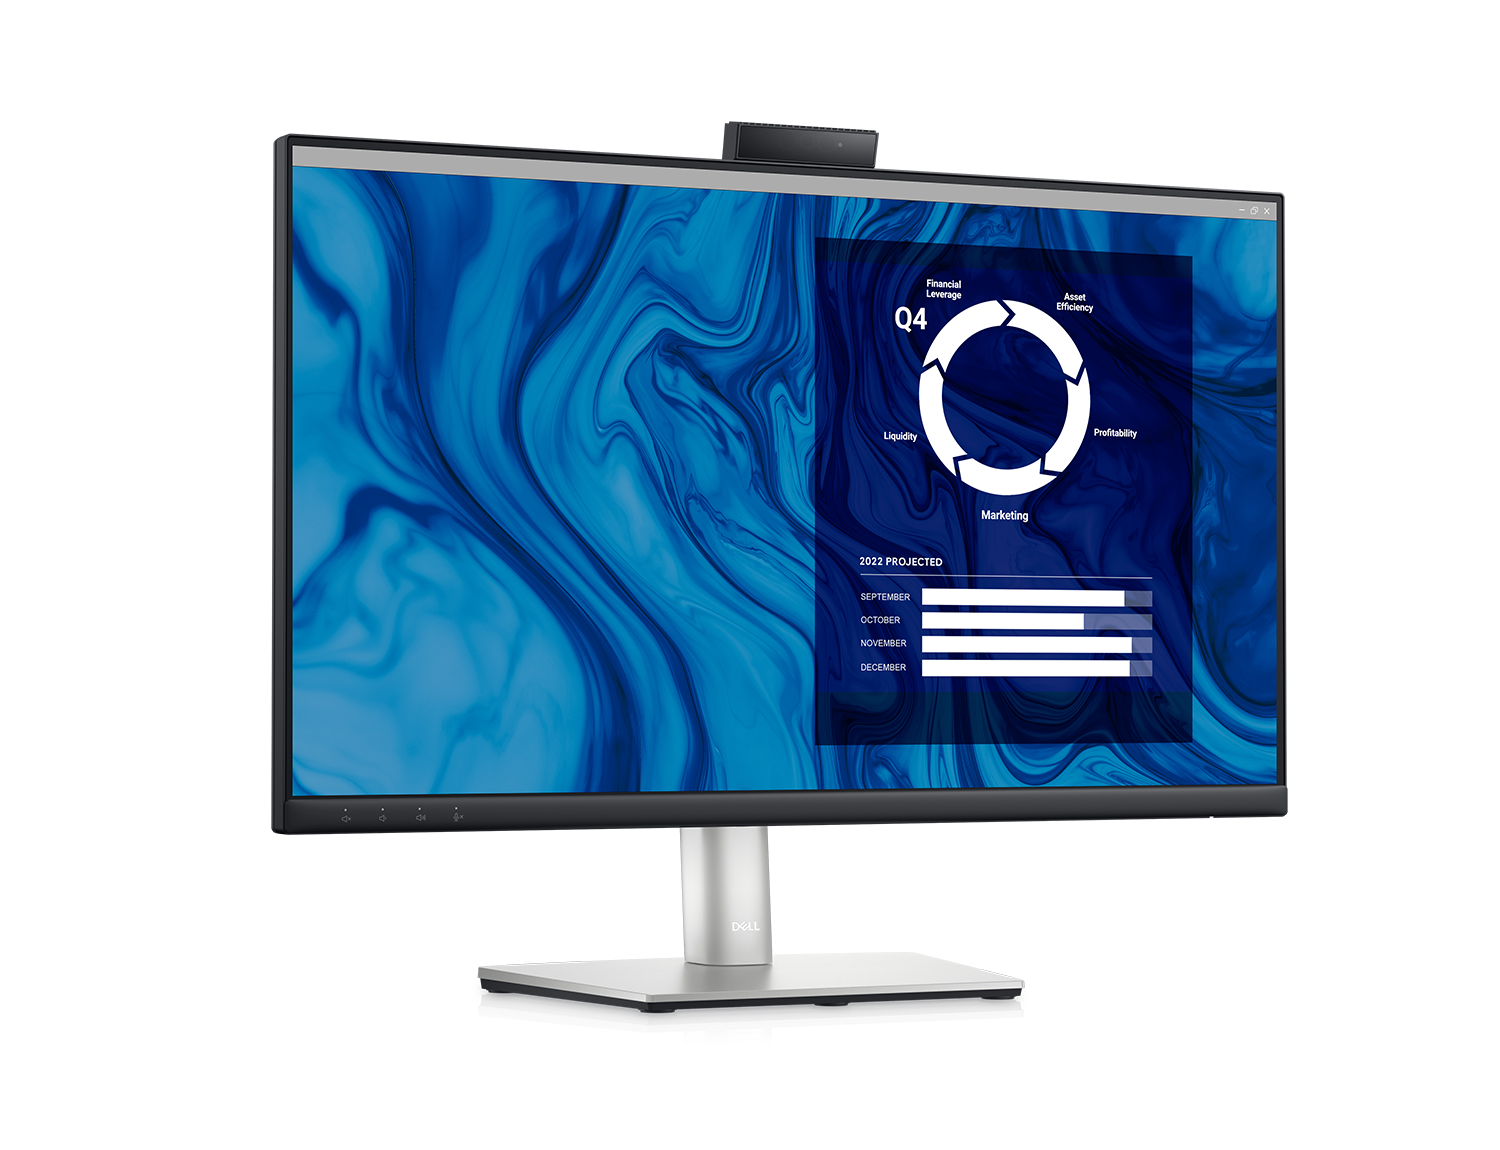 Imagem do Monitor de Videoconferência Dell C2423H com fundo azul e branco e um painel de controlo no ecrã.